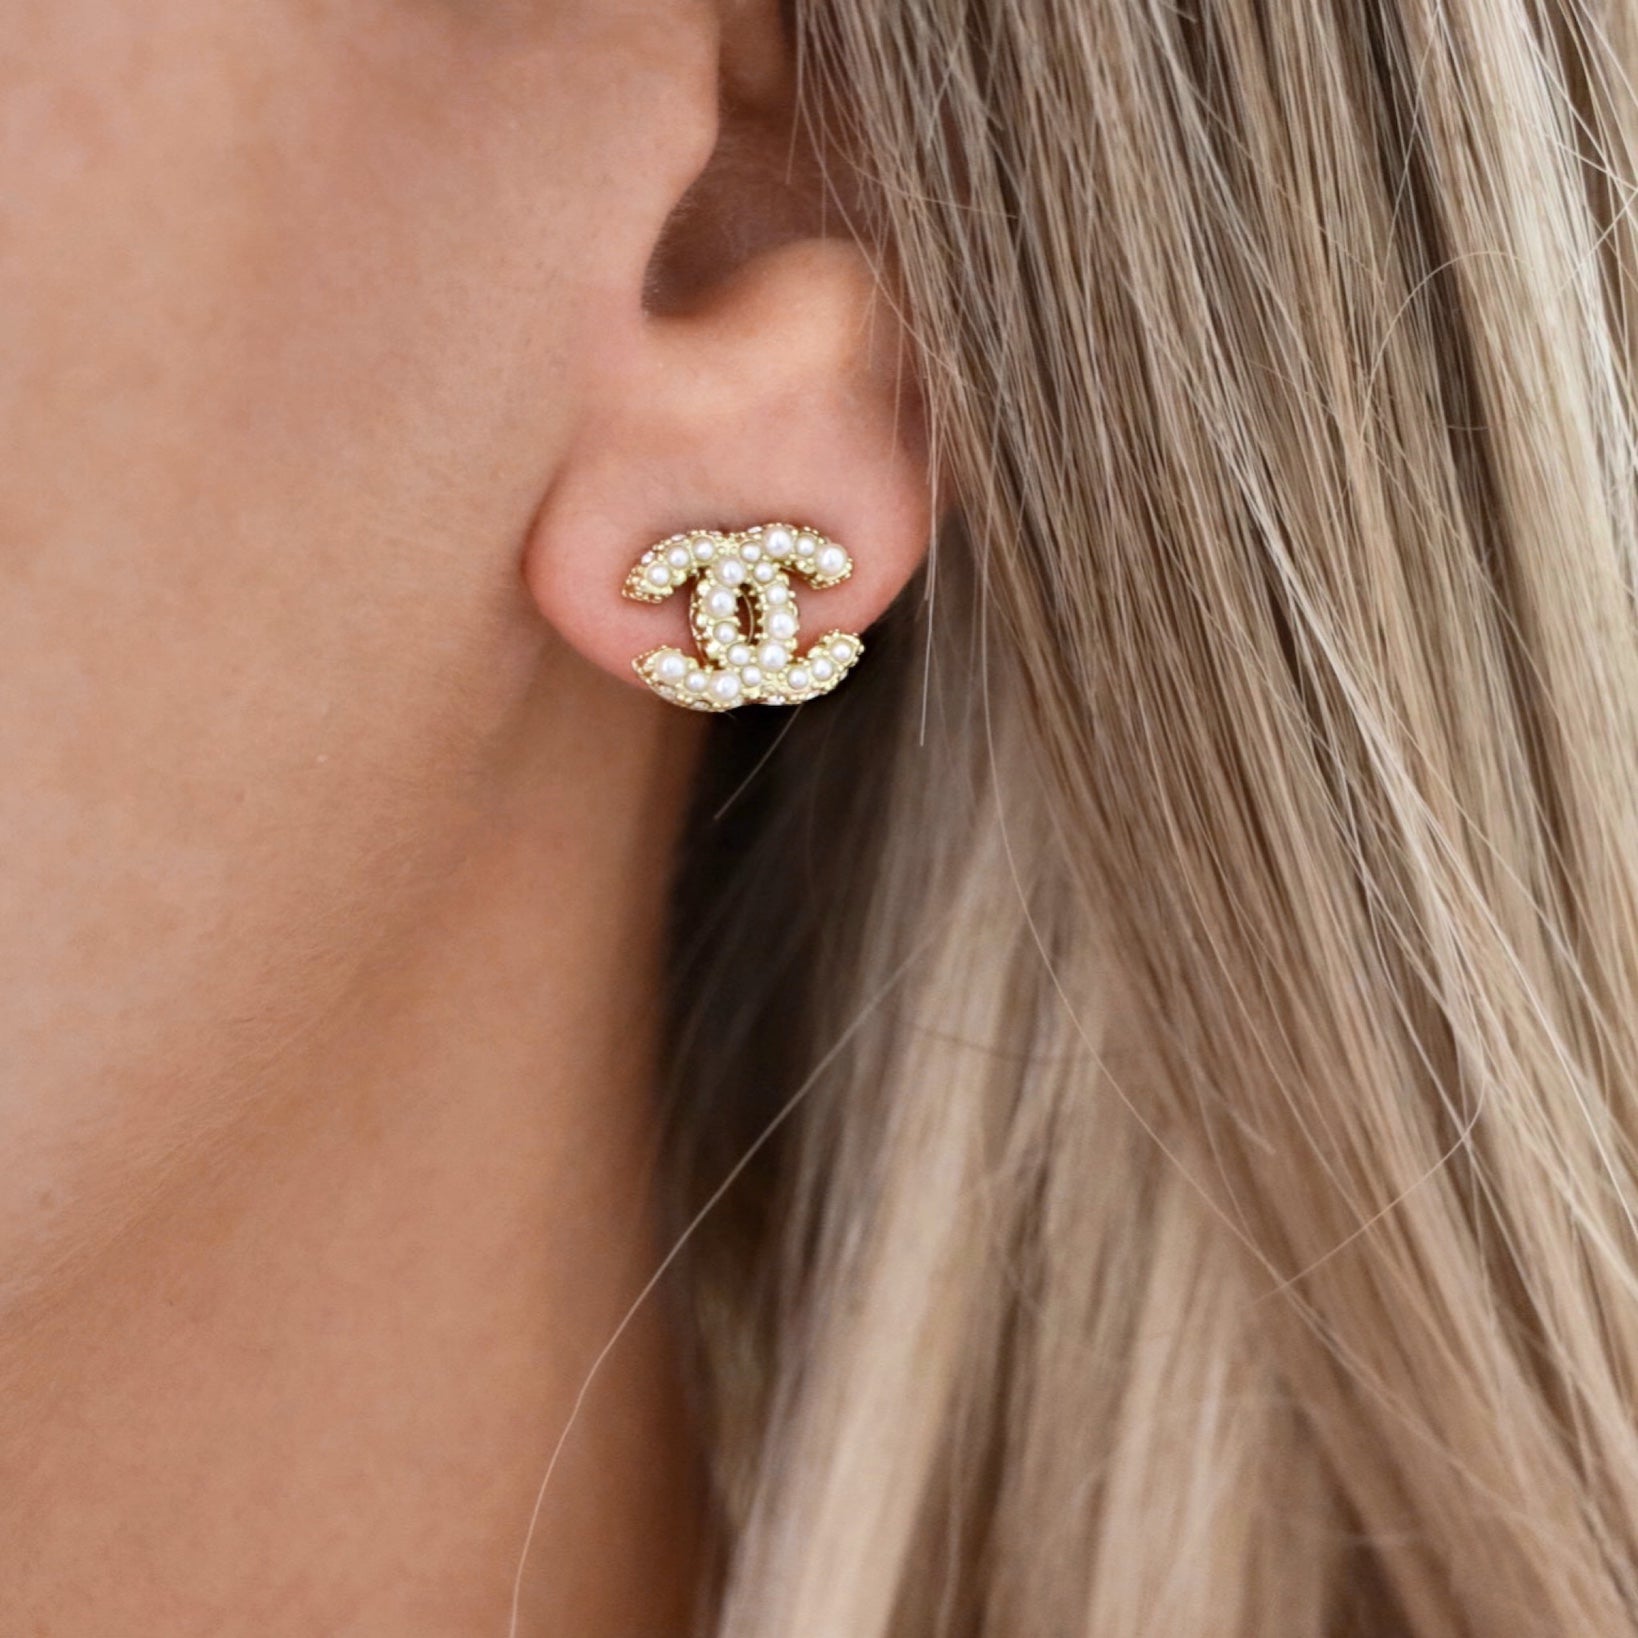 CHANEL, Jewelry, Chanel 23k Mini Cc Stud Earrings